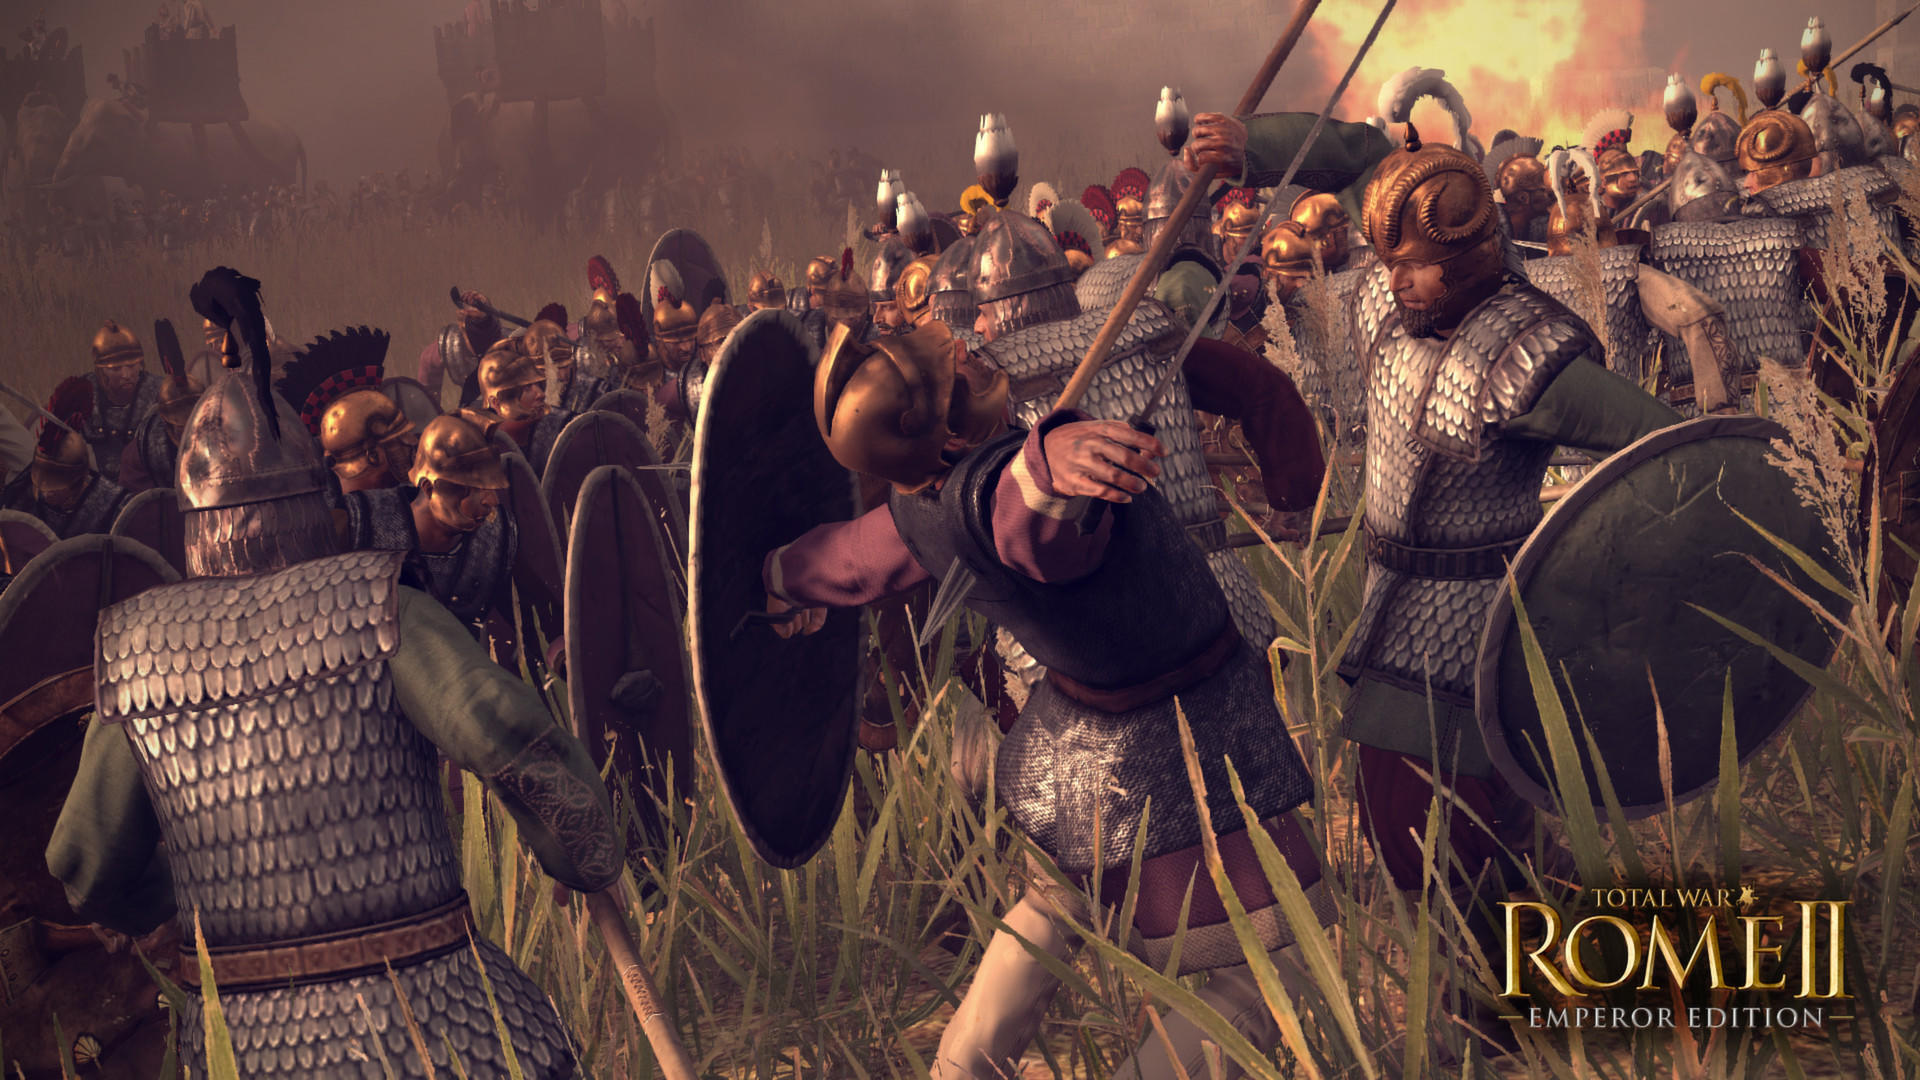 Screenshot 1 of စုစုပေါင်းစစ်ပွဲ- Rome II - ဧကရာဇ်ထုတ်ဝေမှု 